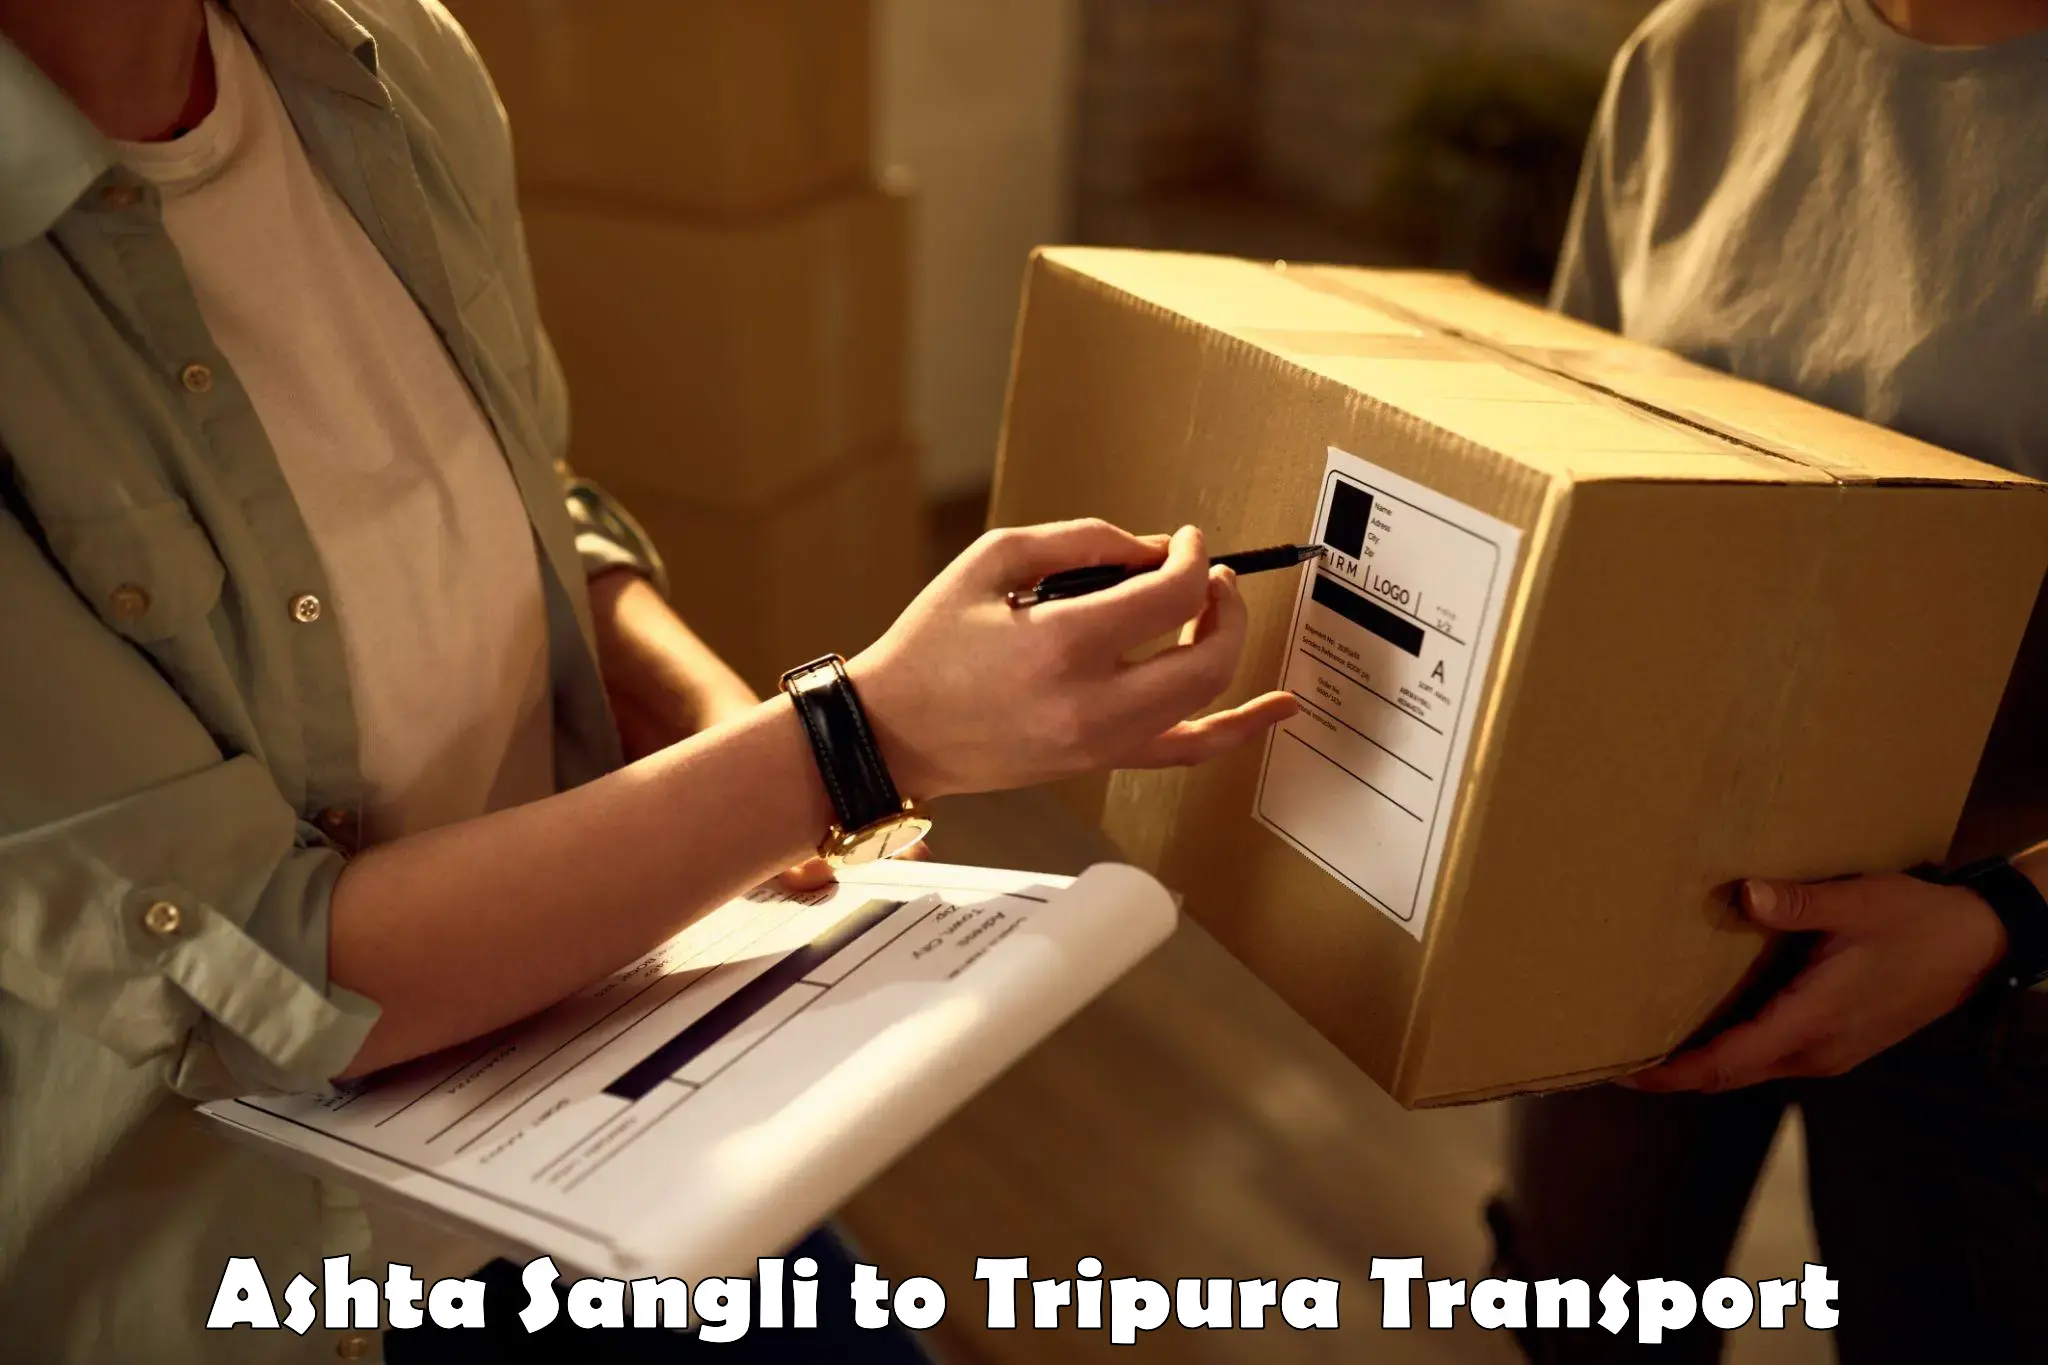 Two wheeler parcel service Ashta Sangli to Udaipur Tripura